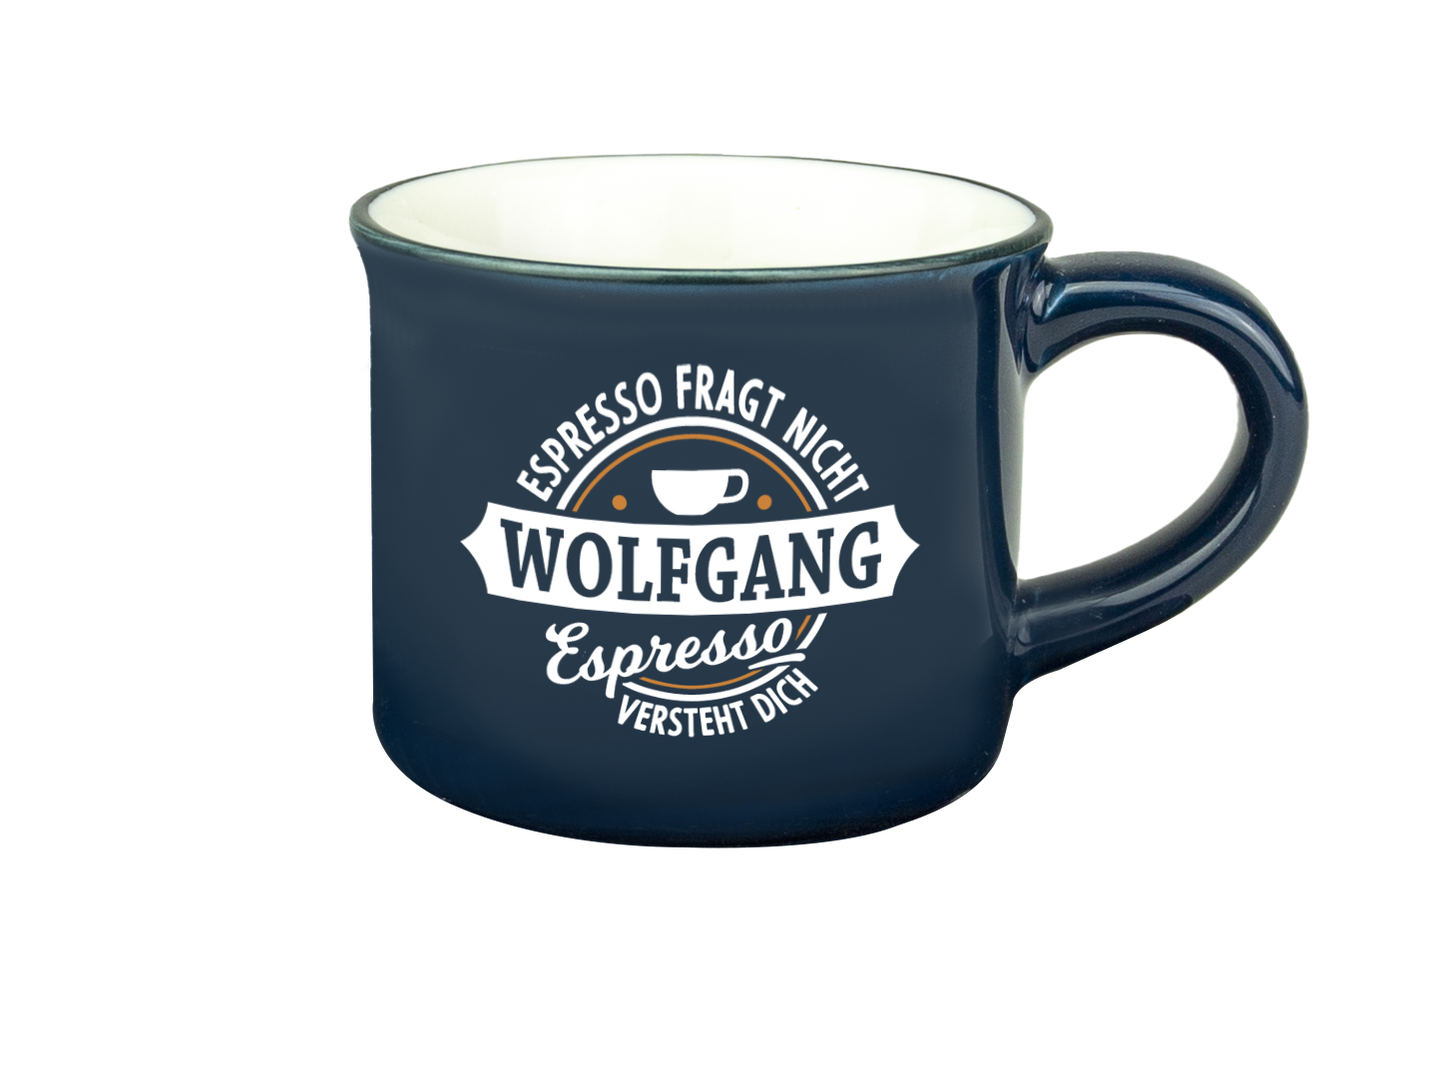 H & H Espresso-Tasse - Espresso fragt nicht Wolfgang Espresso versteht Dich